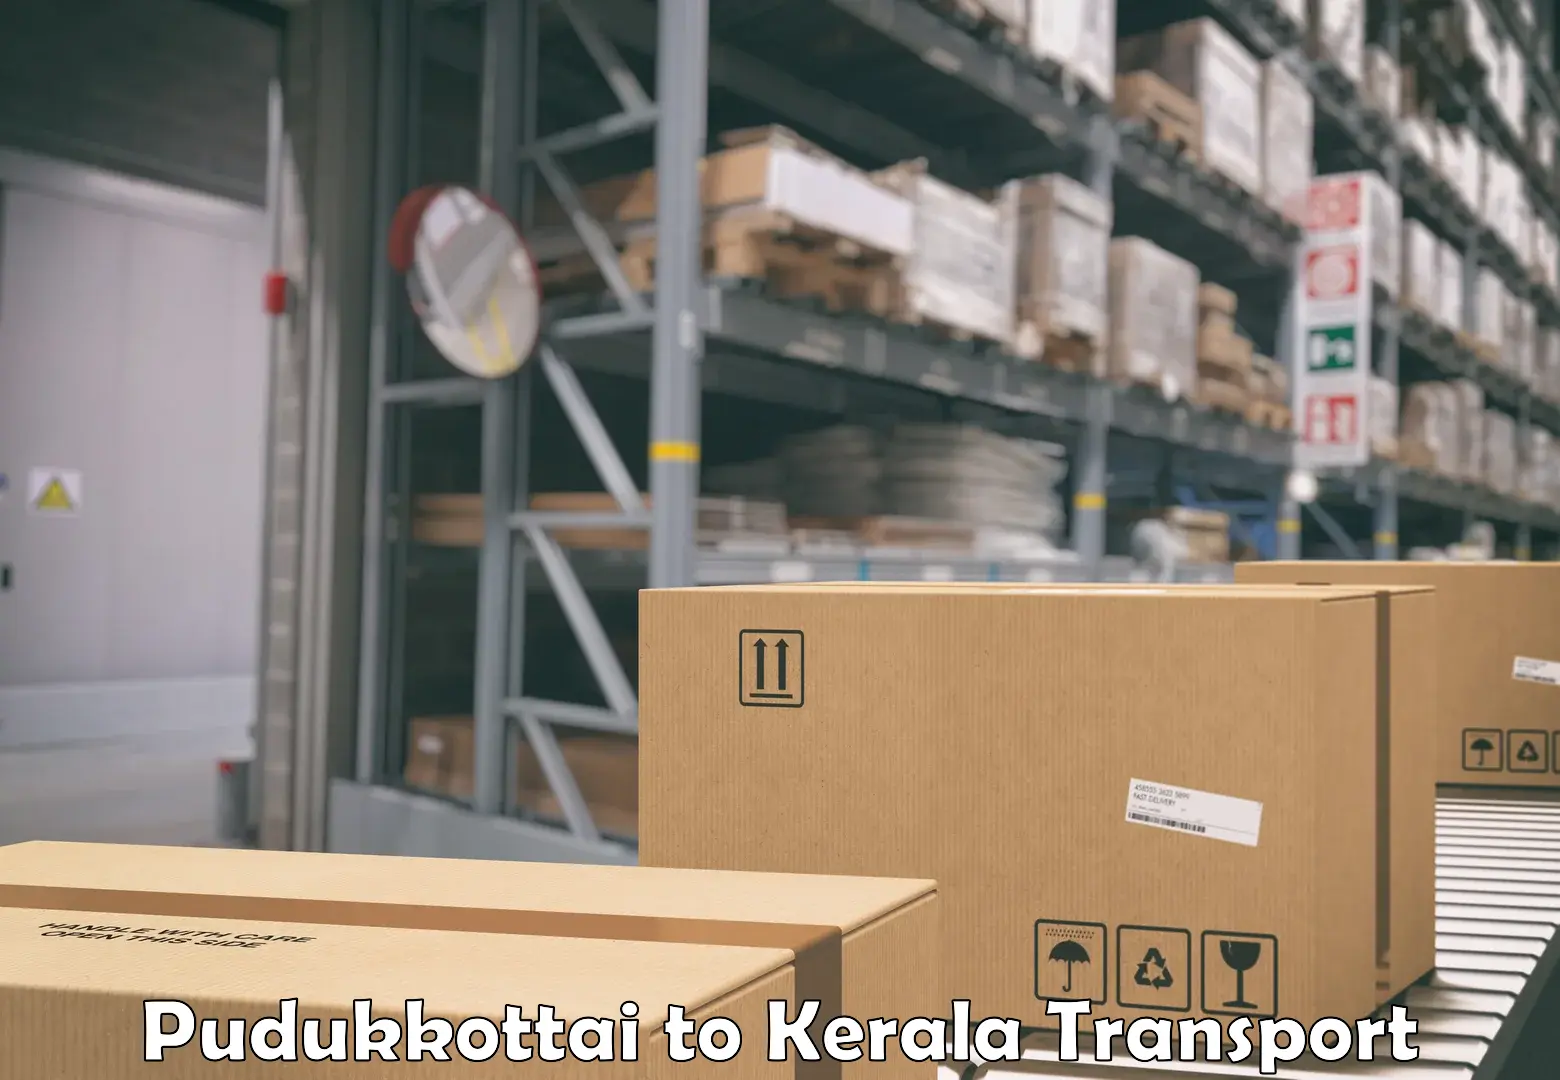 India truck logistics services Pudukkottai to Kattappana